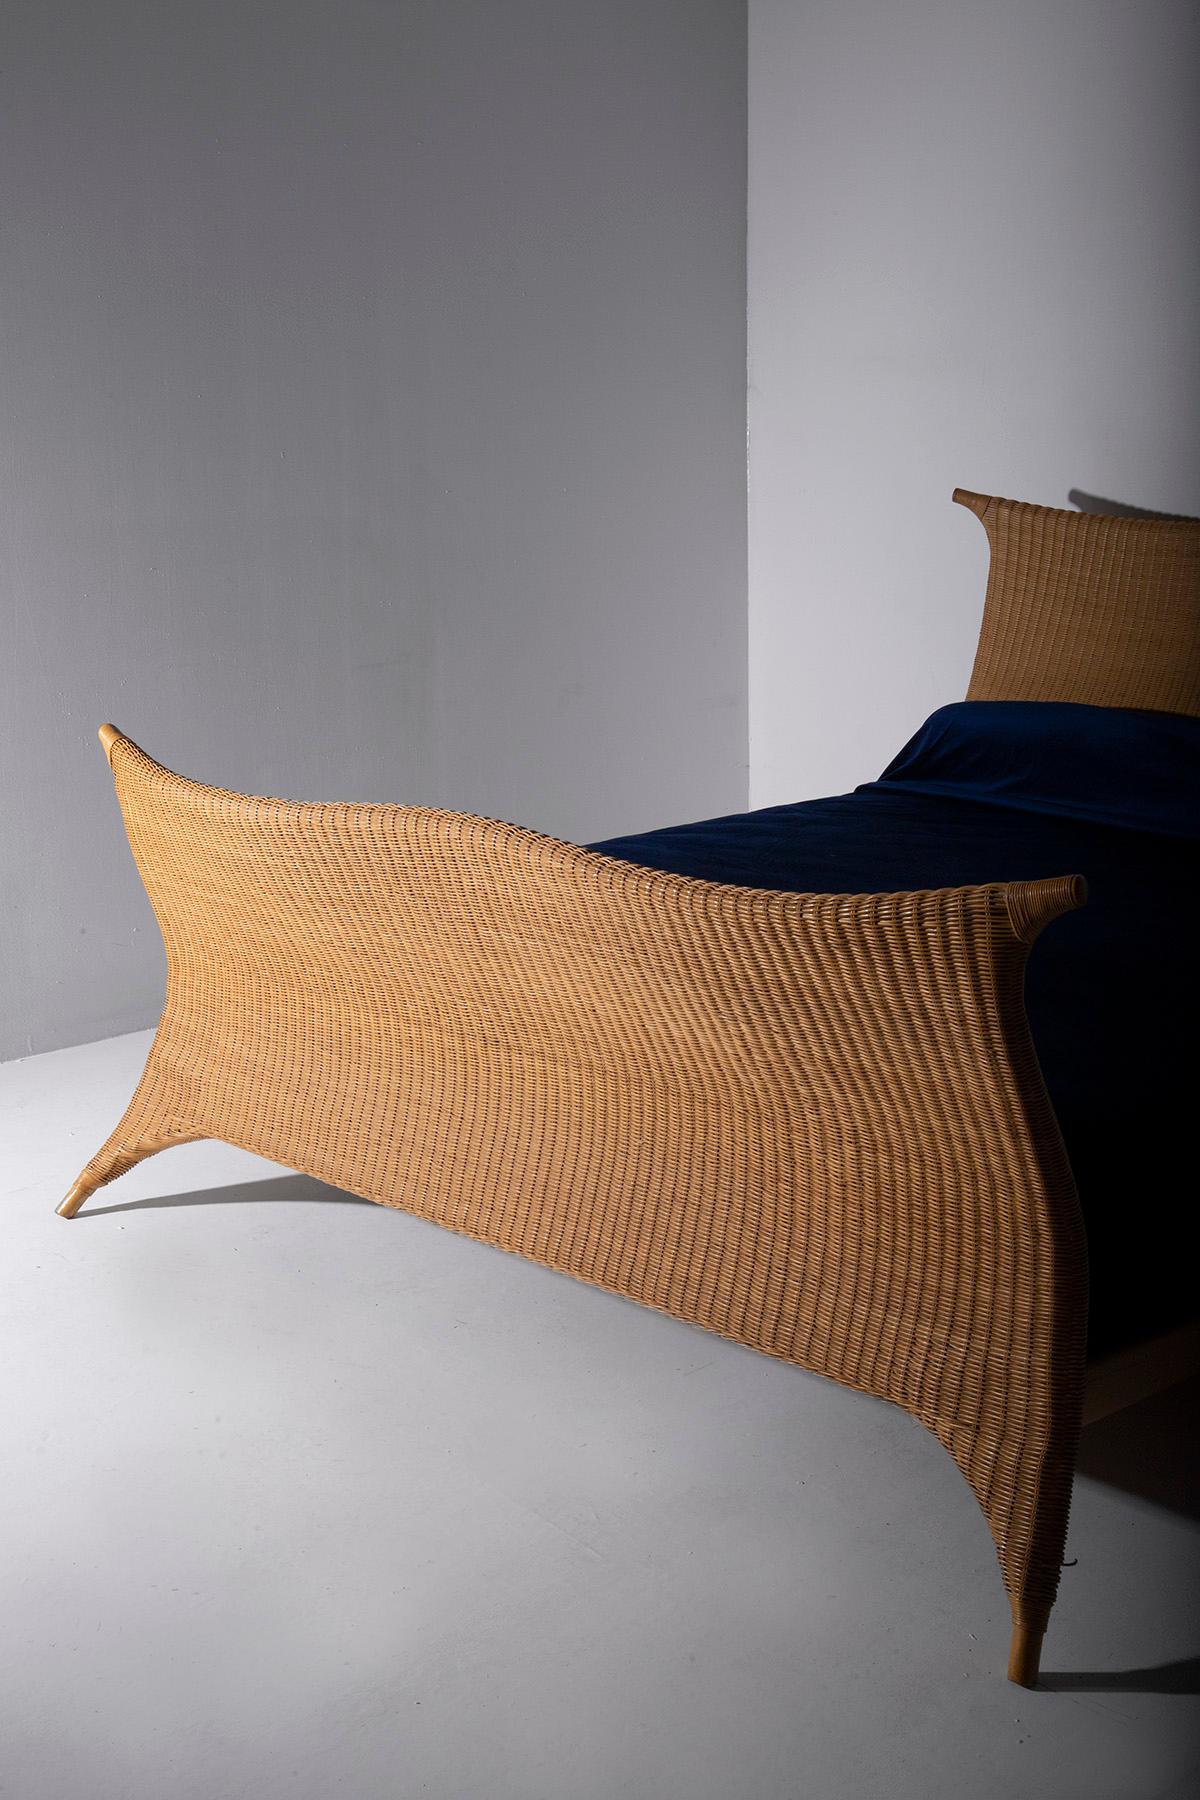 Rattan Italian rattan bed by PierAntonio Bonacina, with label